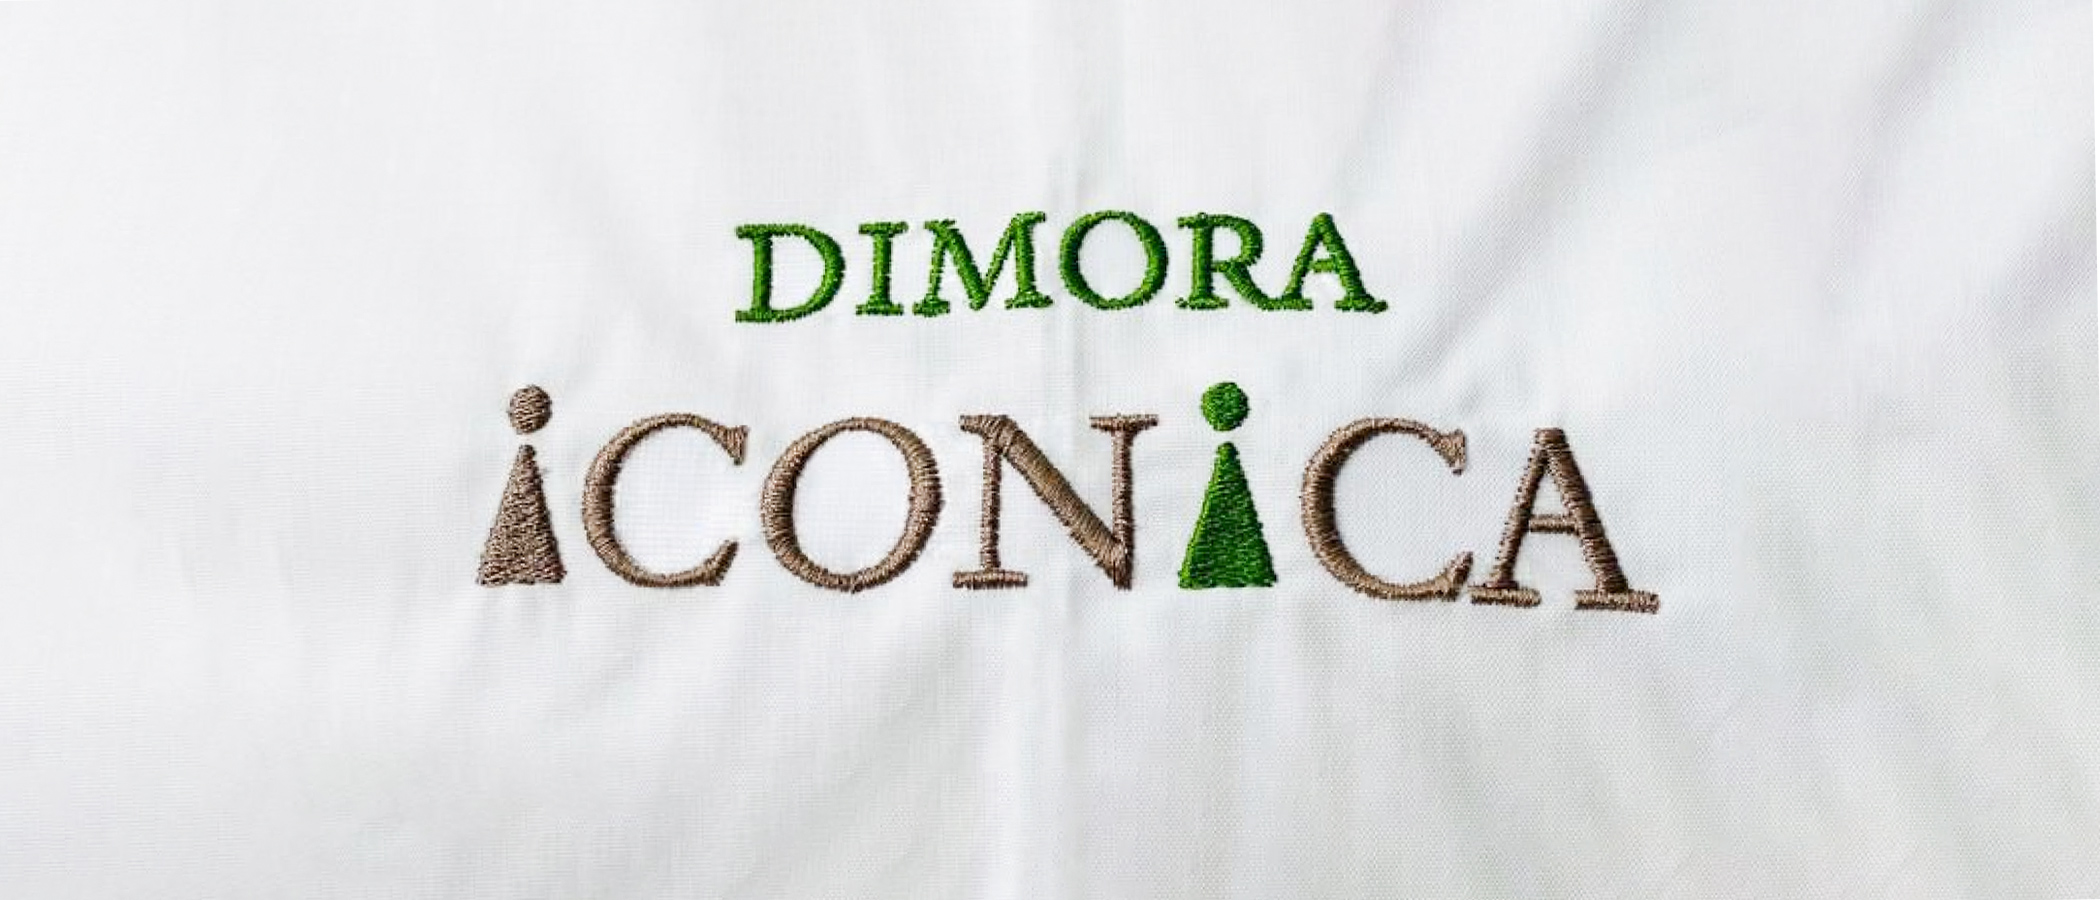 Biancheria personalizzata con logo per Dimora Iconica